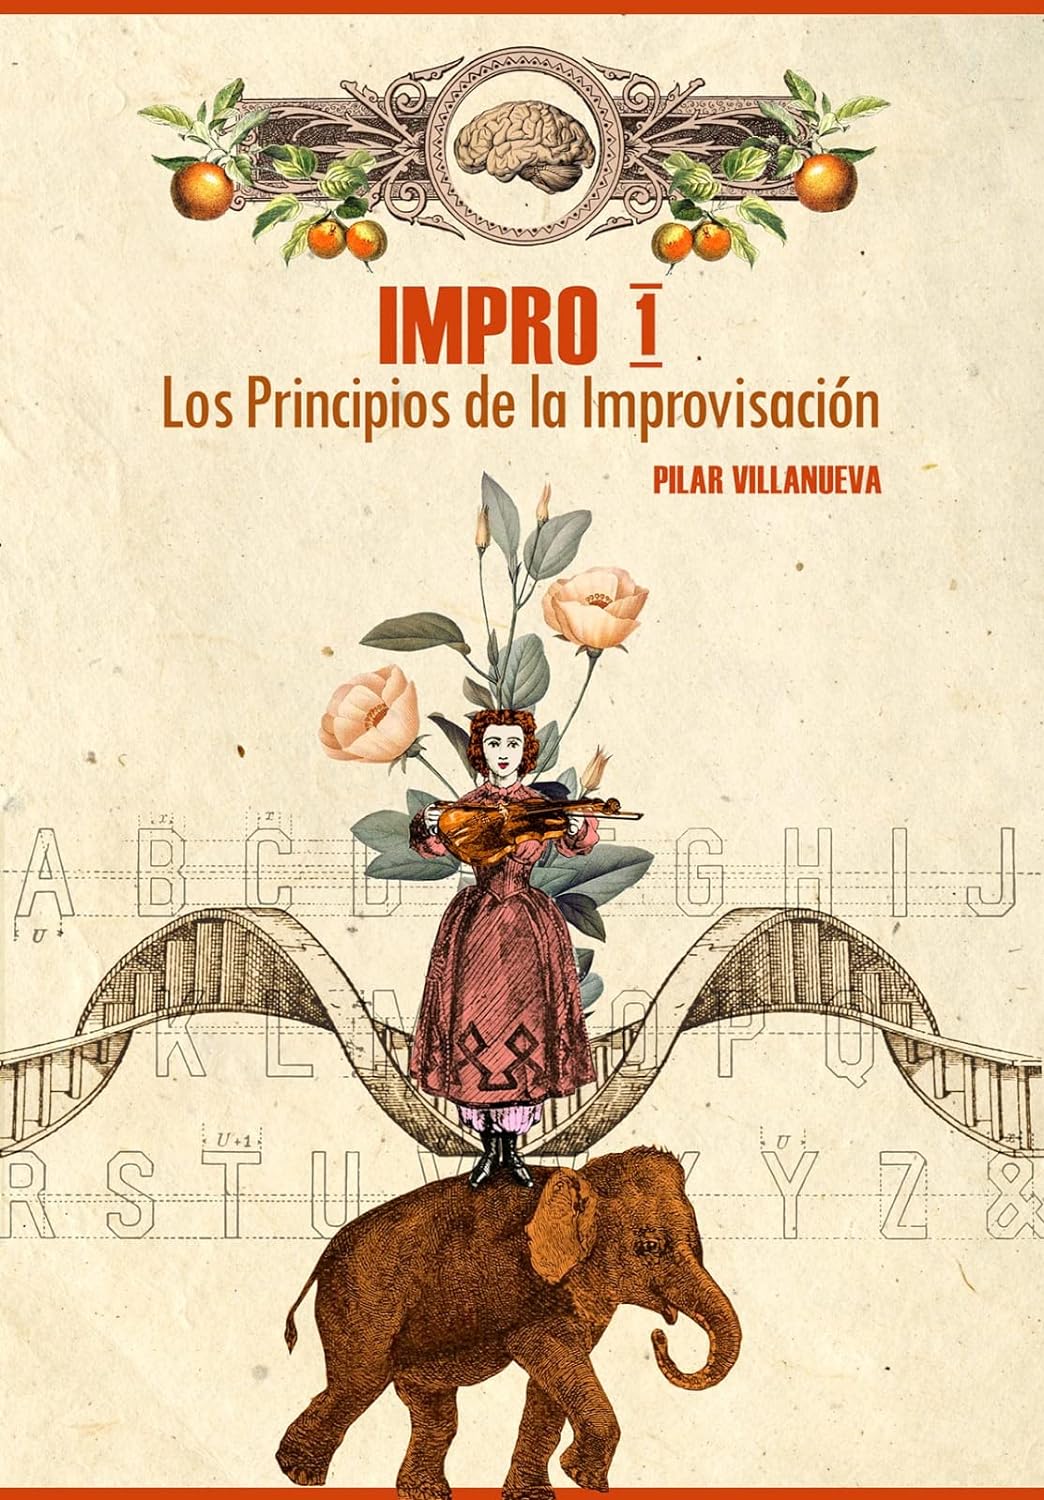 Impro 1: Los principios de la Improvisación (Pilar Villanueva)